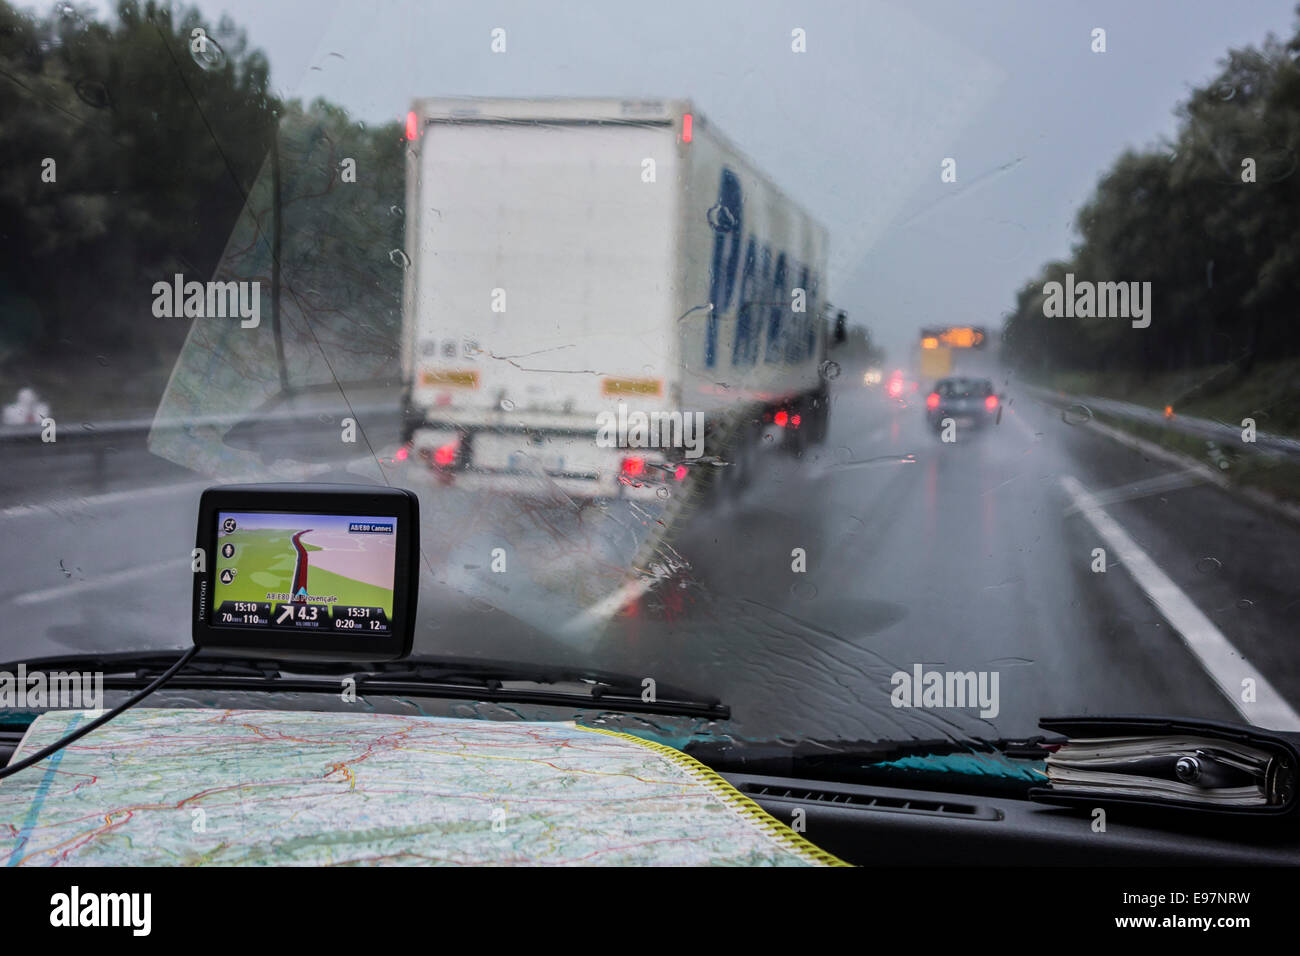 Rasende Lkw Autos auf der Autobahn überholen während starkem Regendusche im Inneren Autos mit GPS und Fahrplan auf Armaturenbrett aus gesehen Stockfoto